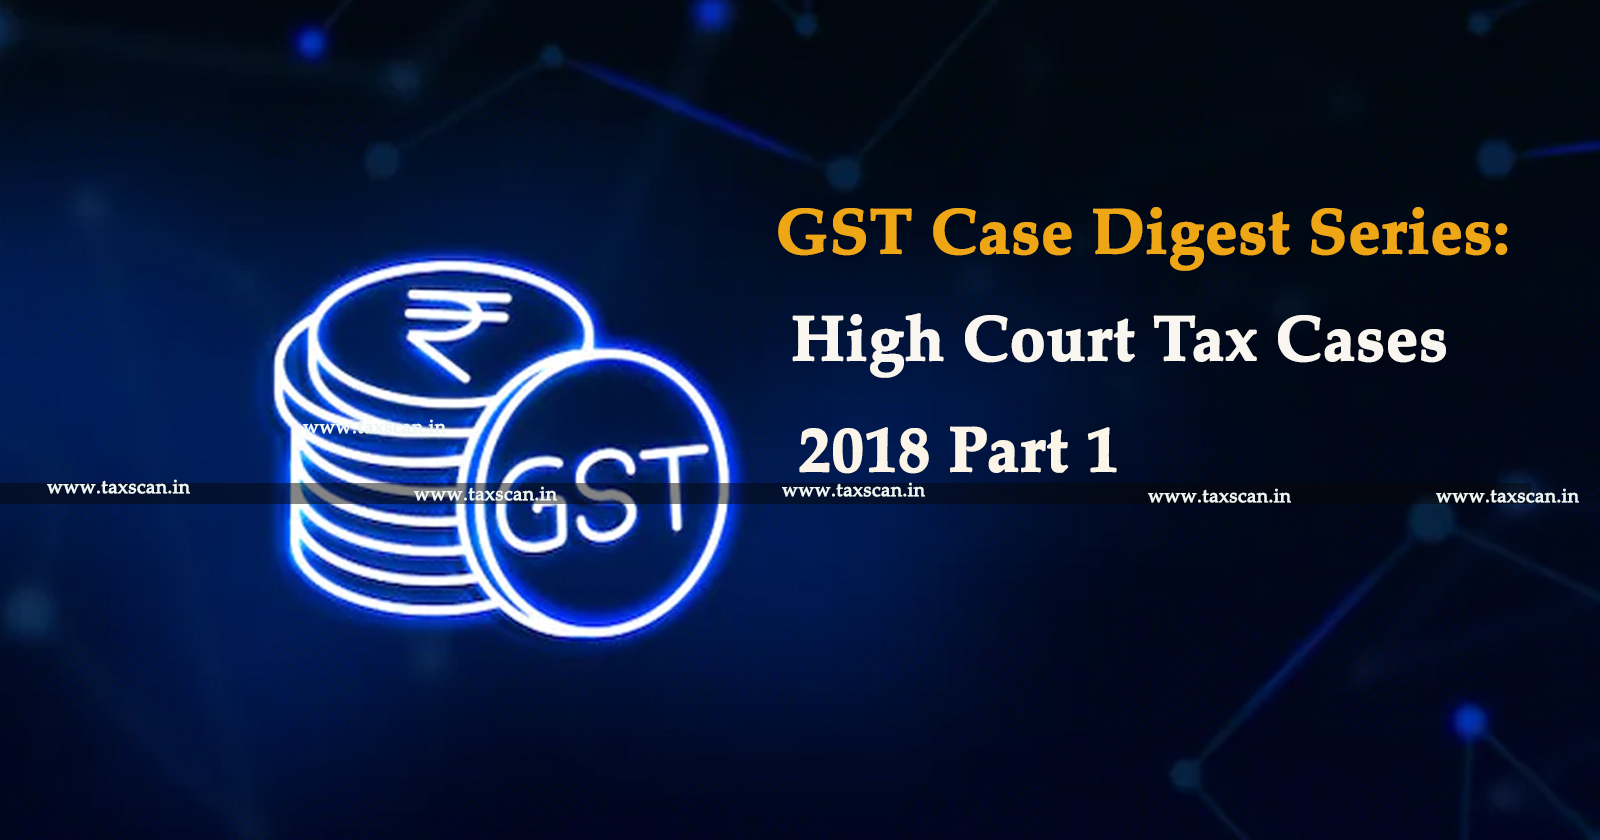 GST Case Digest - Case Digest - GST Case Digest Series - High Court - taxscan